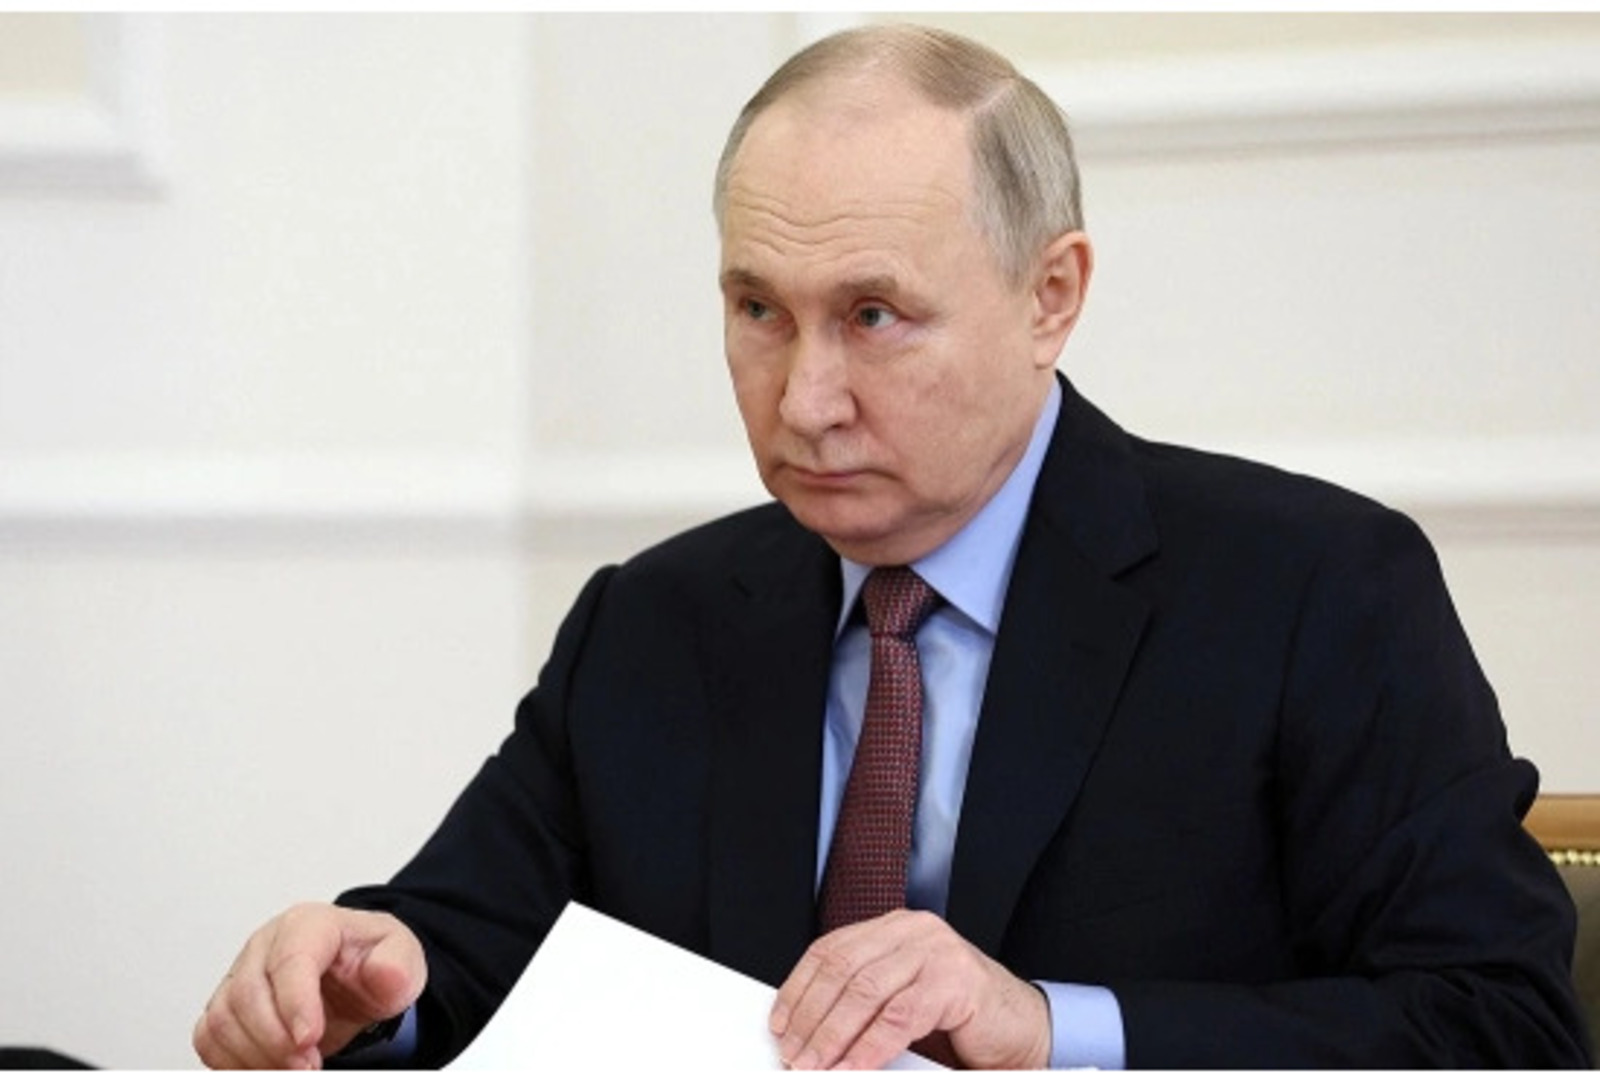 Участвующих в диверсионно-разведывательных группах нужно наказывать, заявил Путин